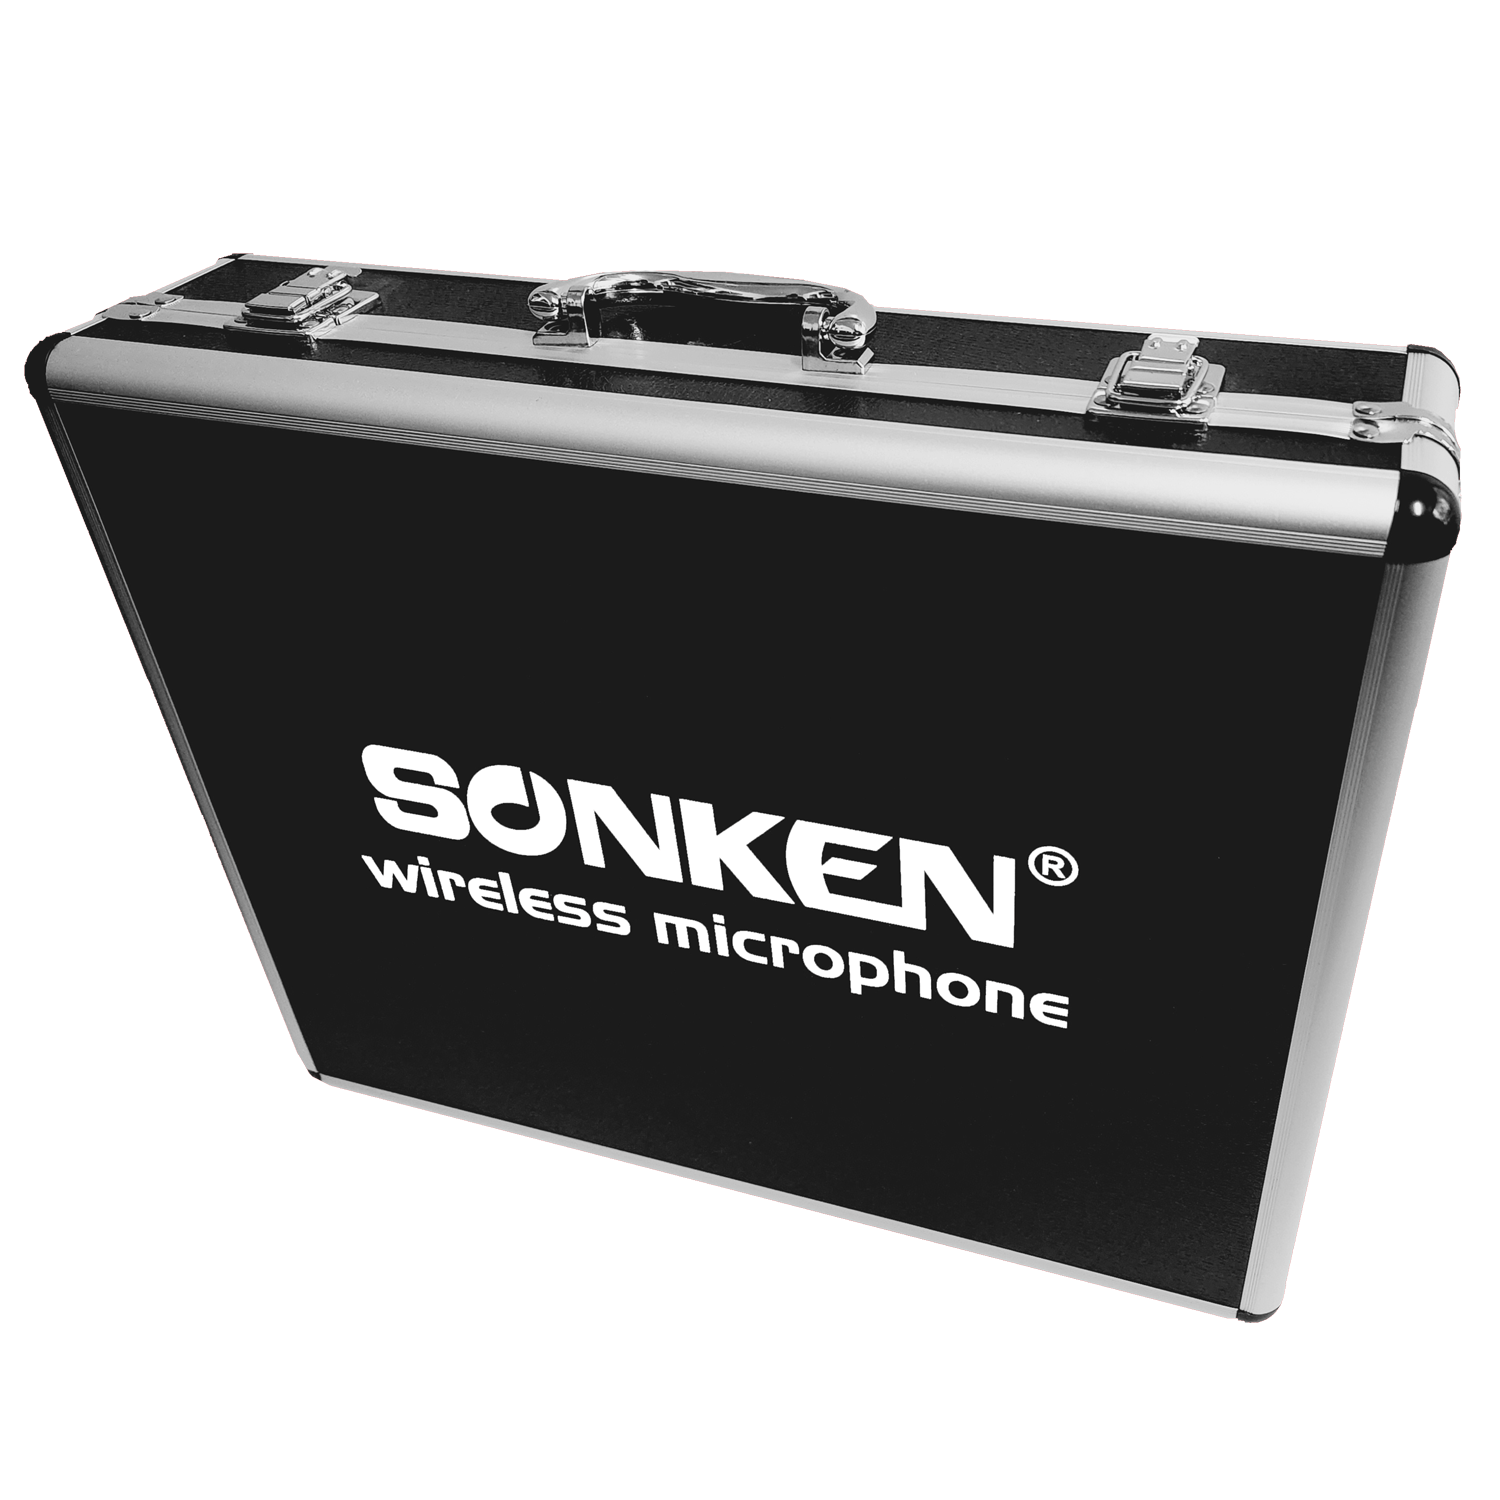 Sonken Wireless Microphone Road Case - Karaoke Home Entertainment